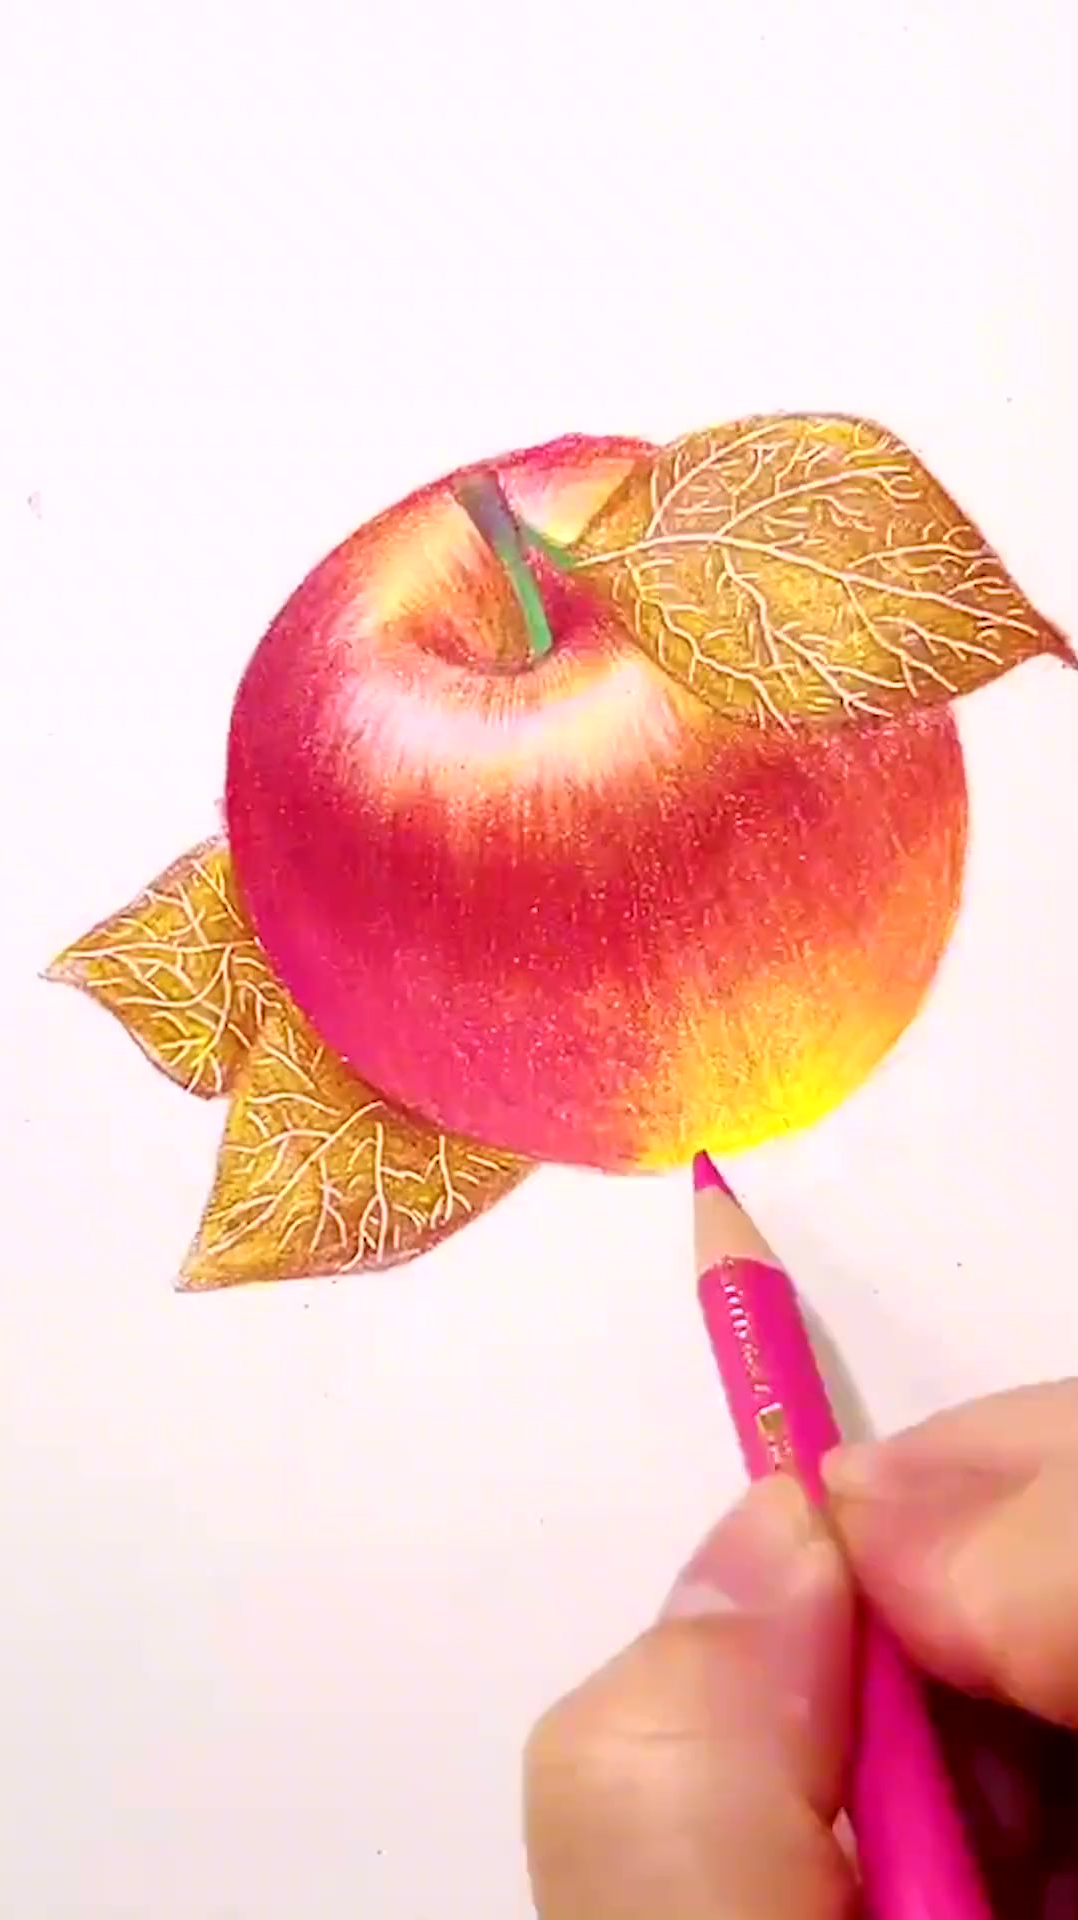 彩铅画,今天就画一个大苹果吧